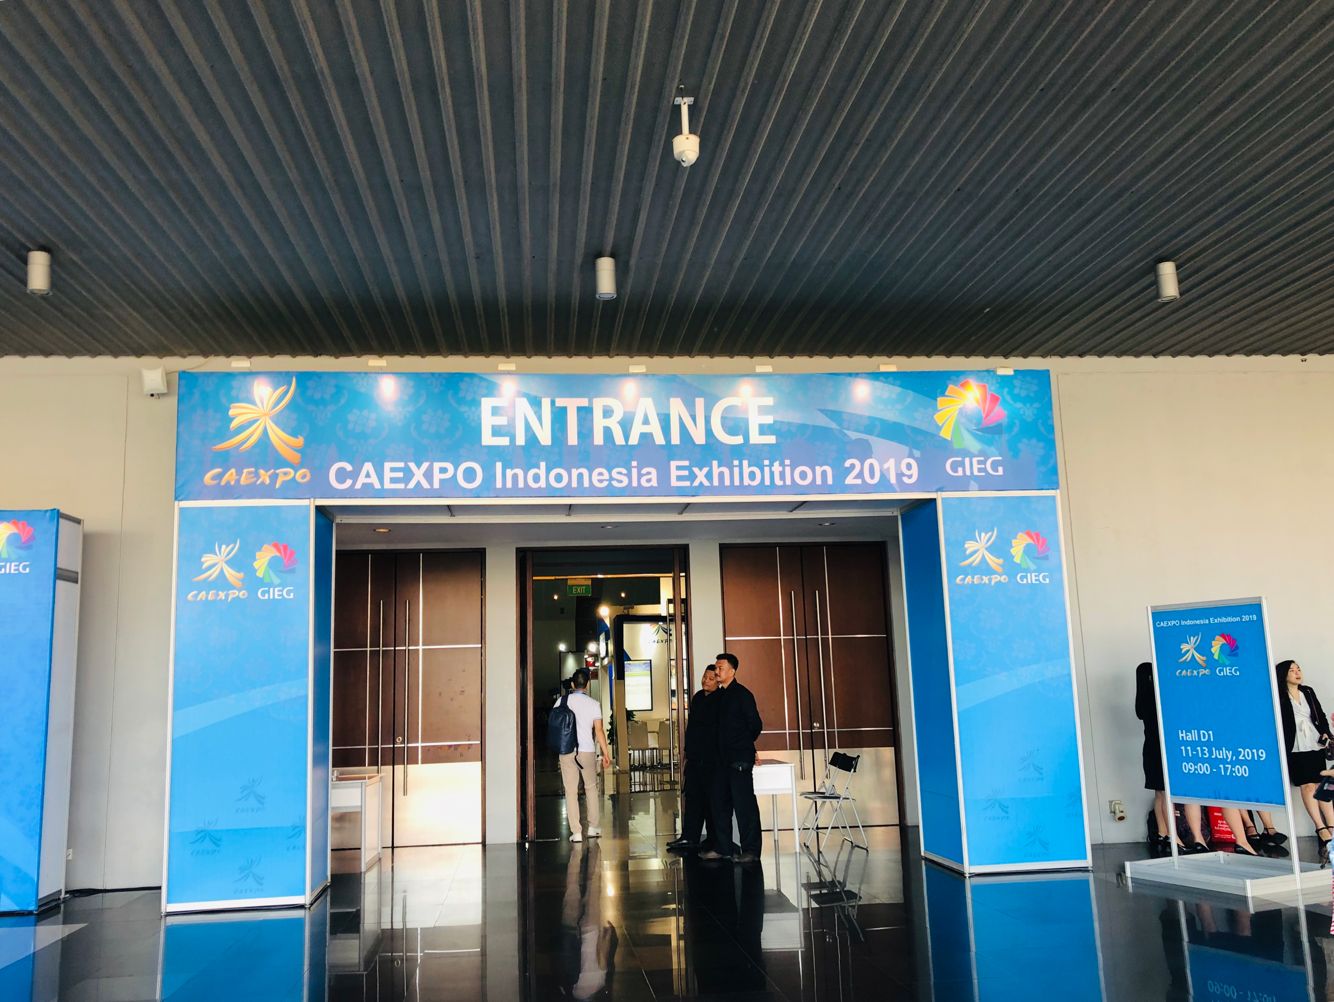 CAEXPO Indonesia Exhibition, 2019